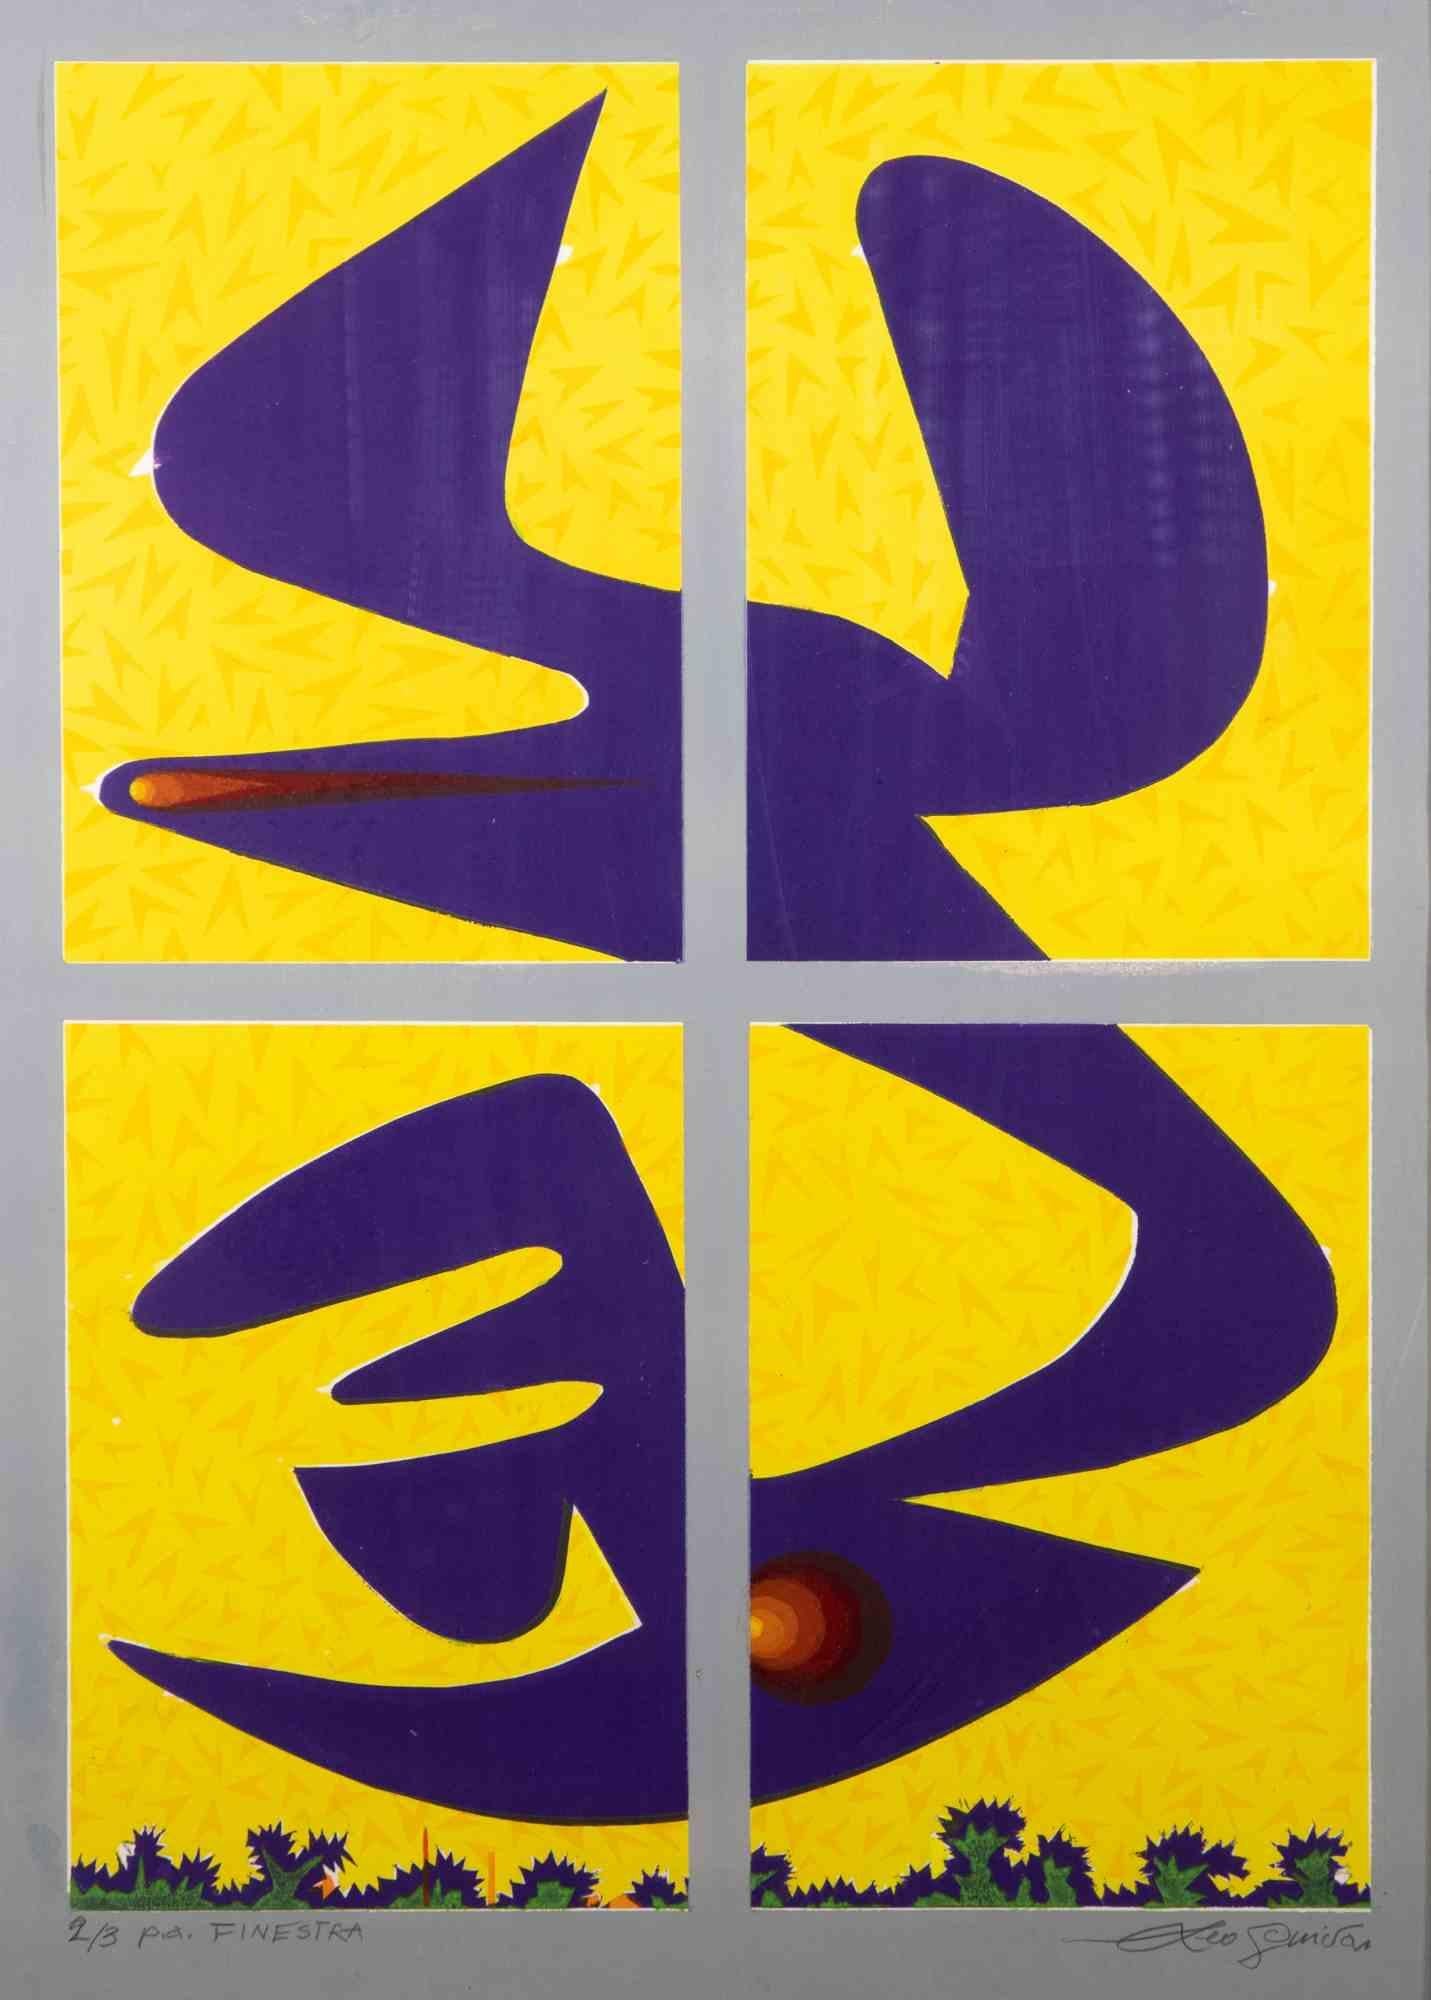 Window ist ein zeitgenössisches Kunstwerk von Leo Guida aus den 1970er Jahren.

Gemischtfarbige Lithographie.

Handsigniert und nummeriert am unteren Rand: 2/3

Der Beweis des Künstlers.

Originaltitel: Finestra

Leo Guida  (1992 - 2017). Mit seinem